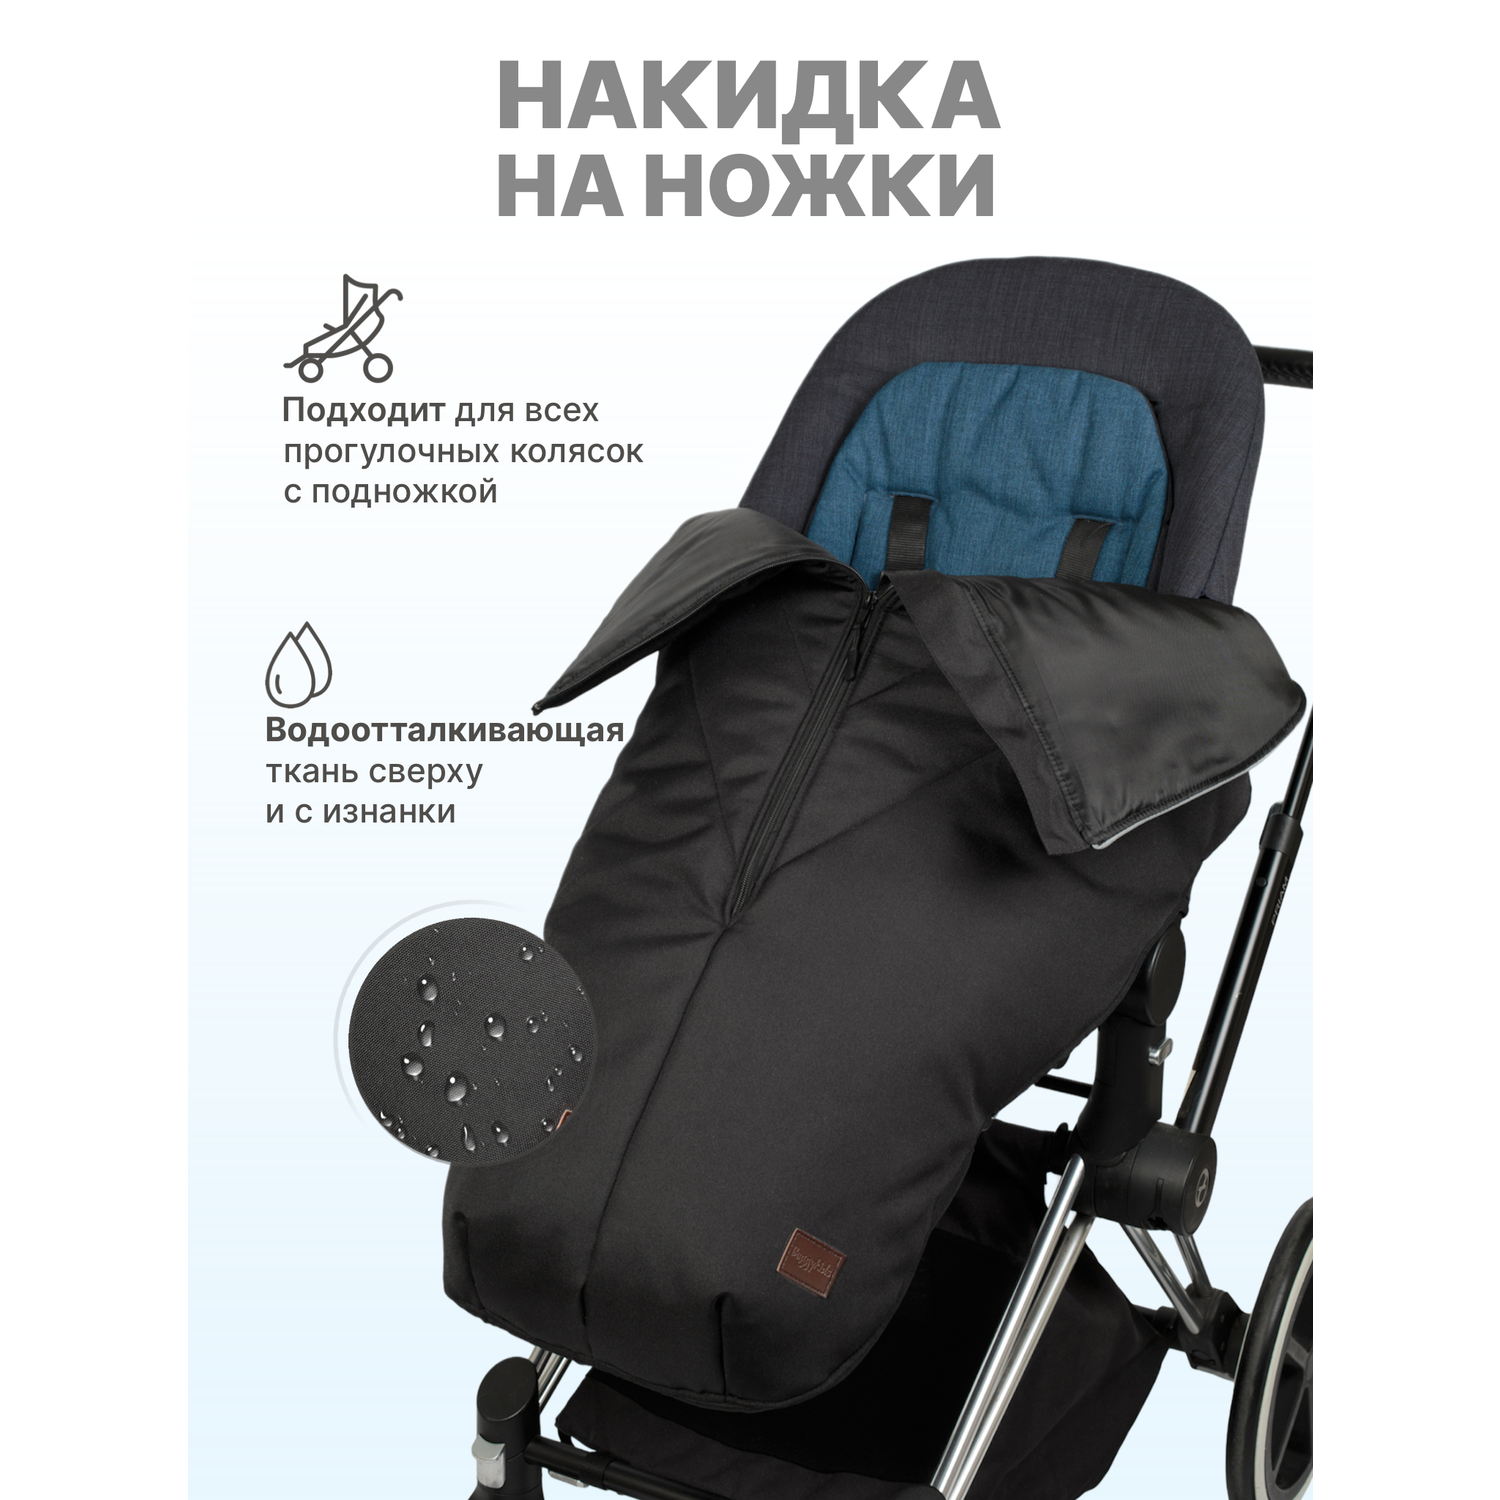 Чехол для детской коляски купить в Москве| Чехлы для транспортировки детских колясок